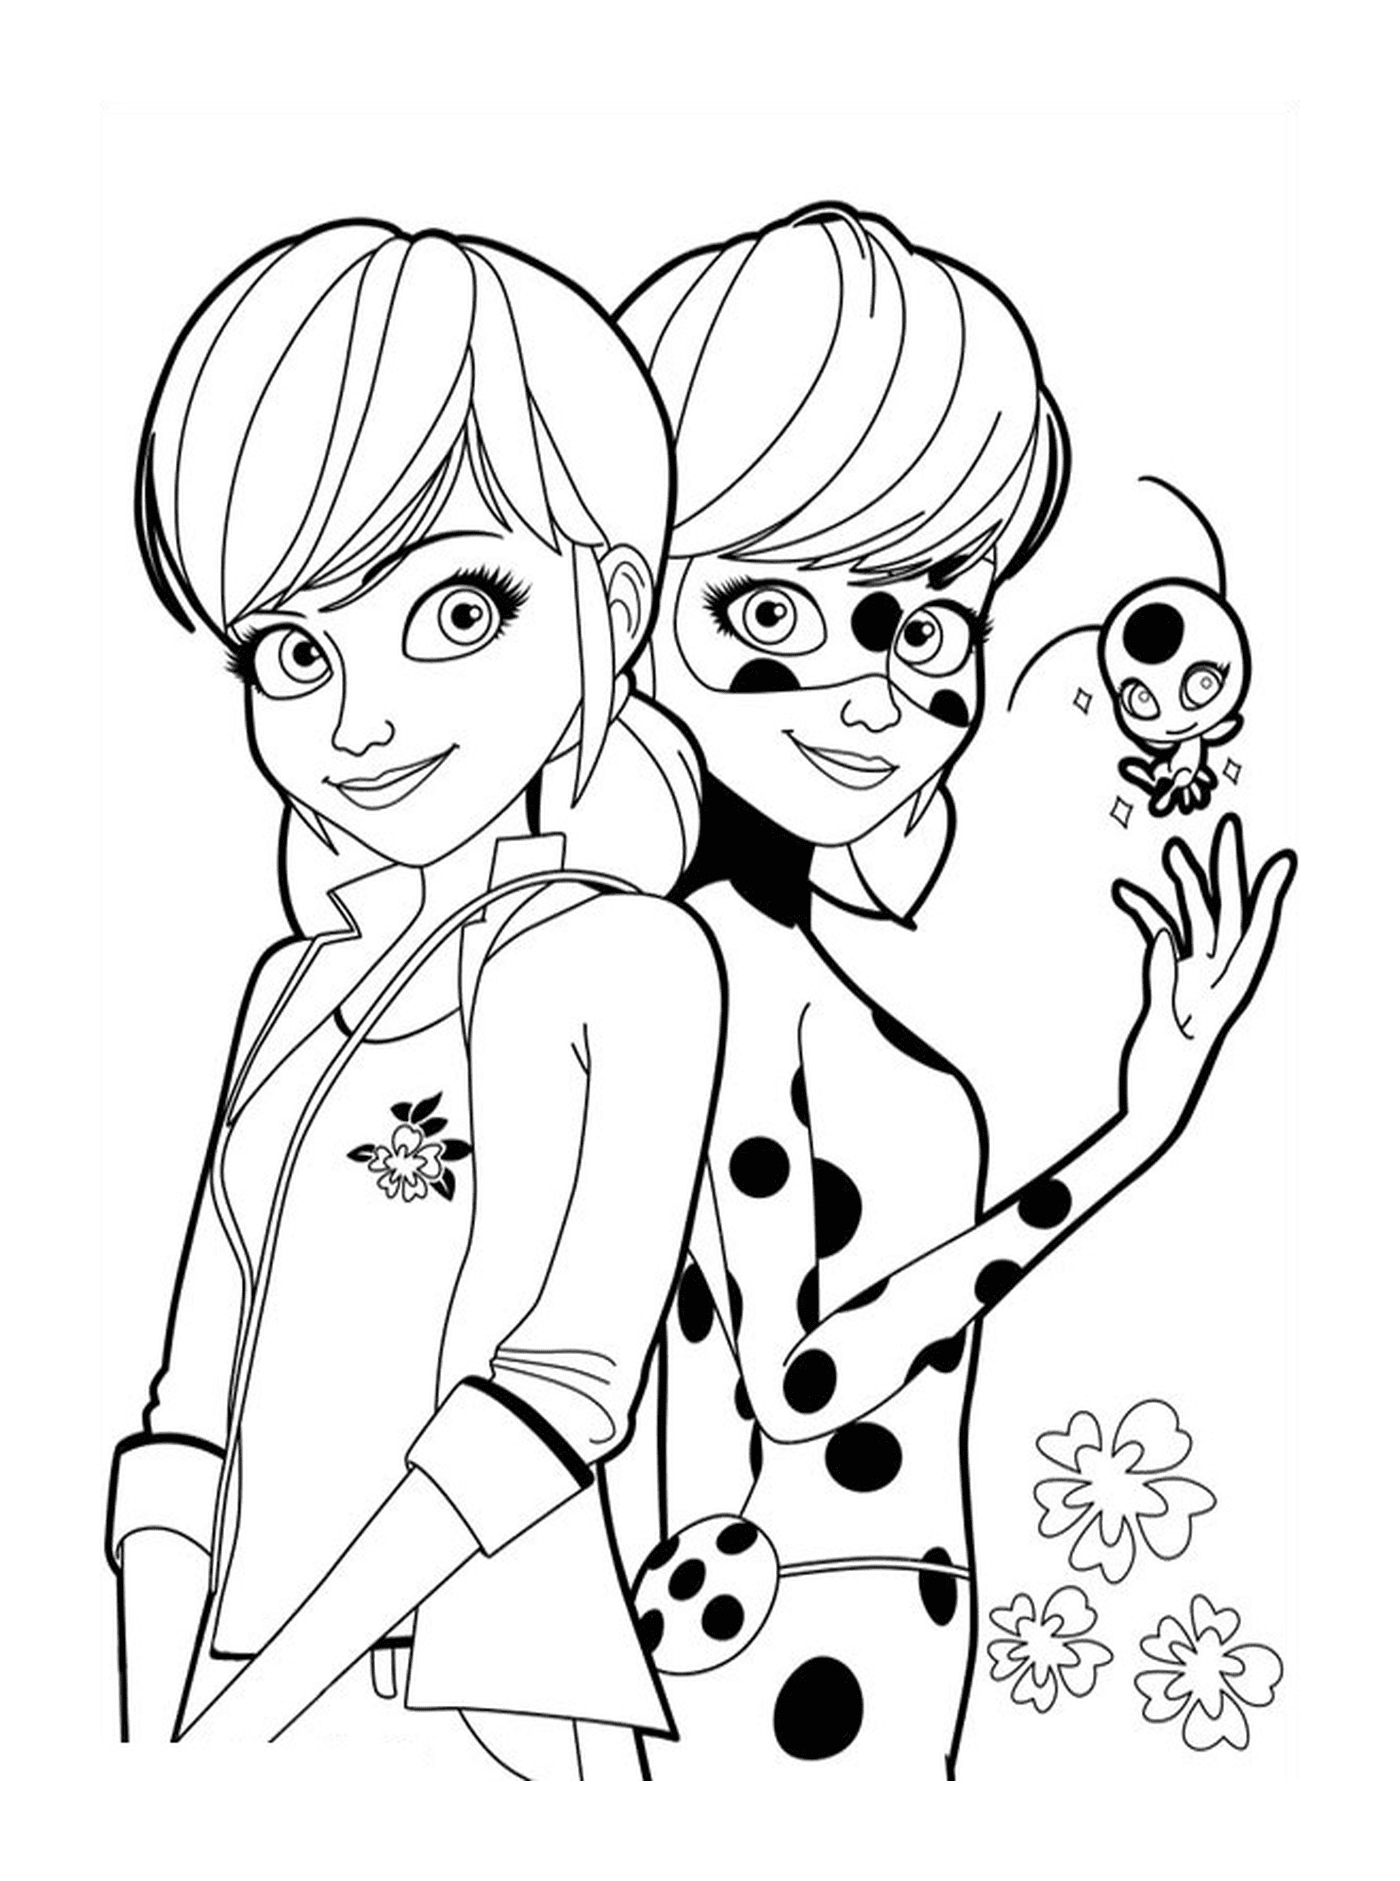  Ladybug und Marinette von Miraculous Ladybug zusammen 